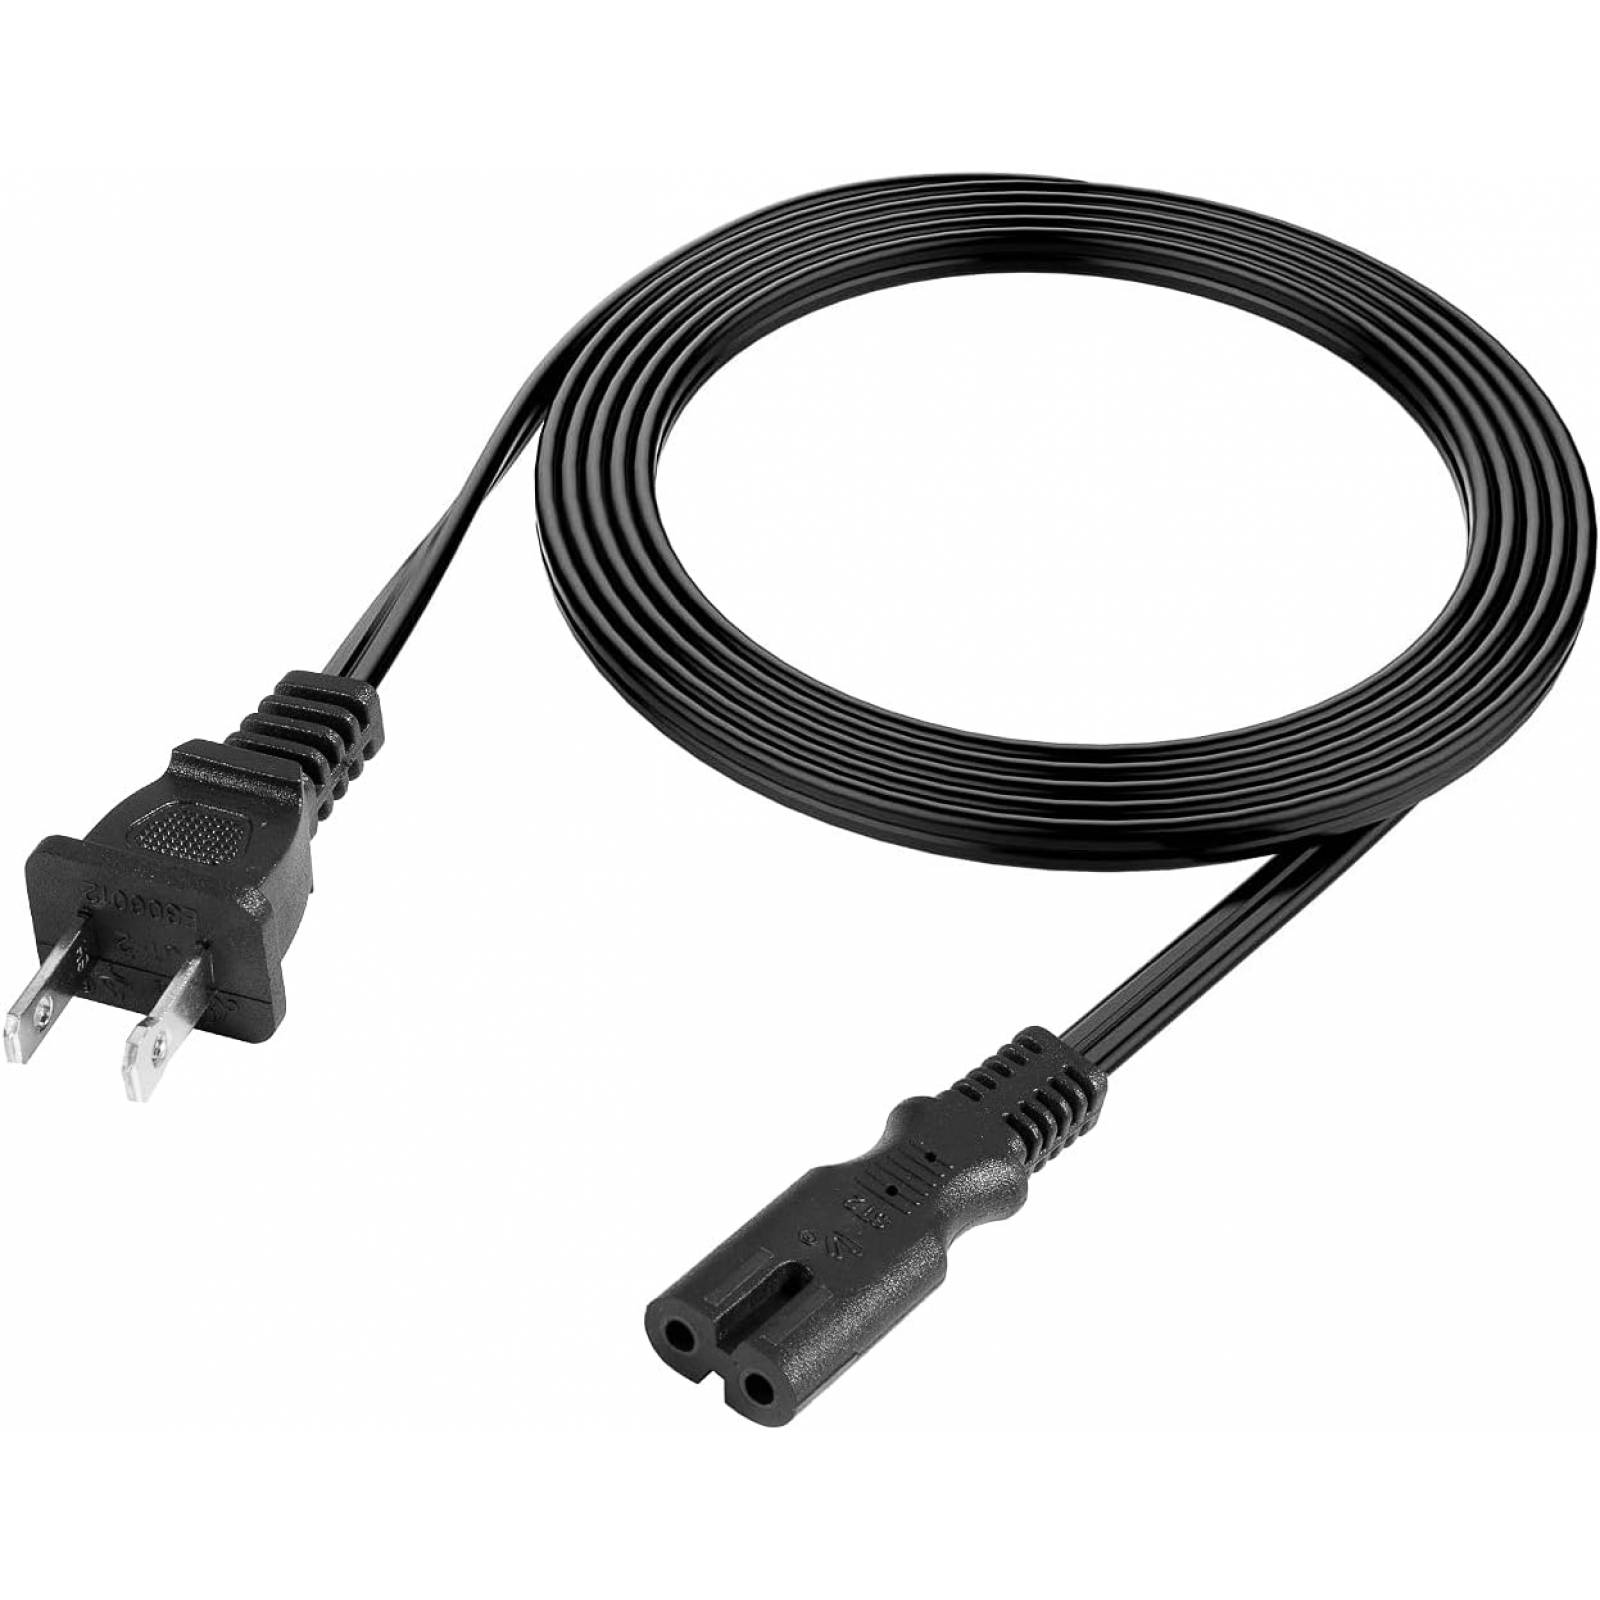 Cable de alimentación (Interlock) para extensión de 1.5